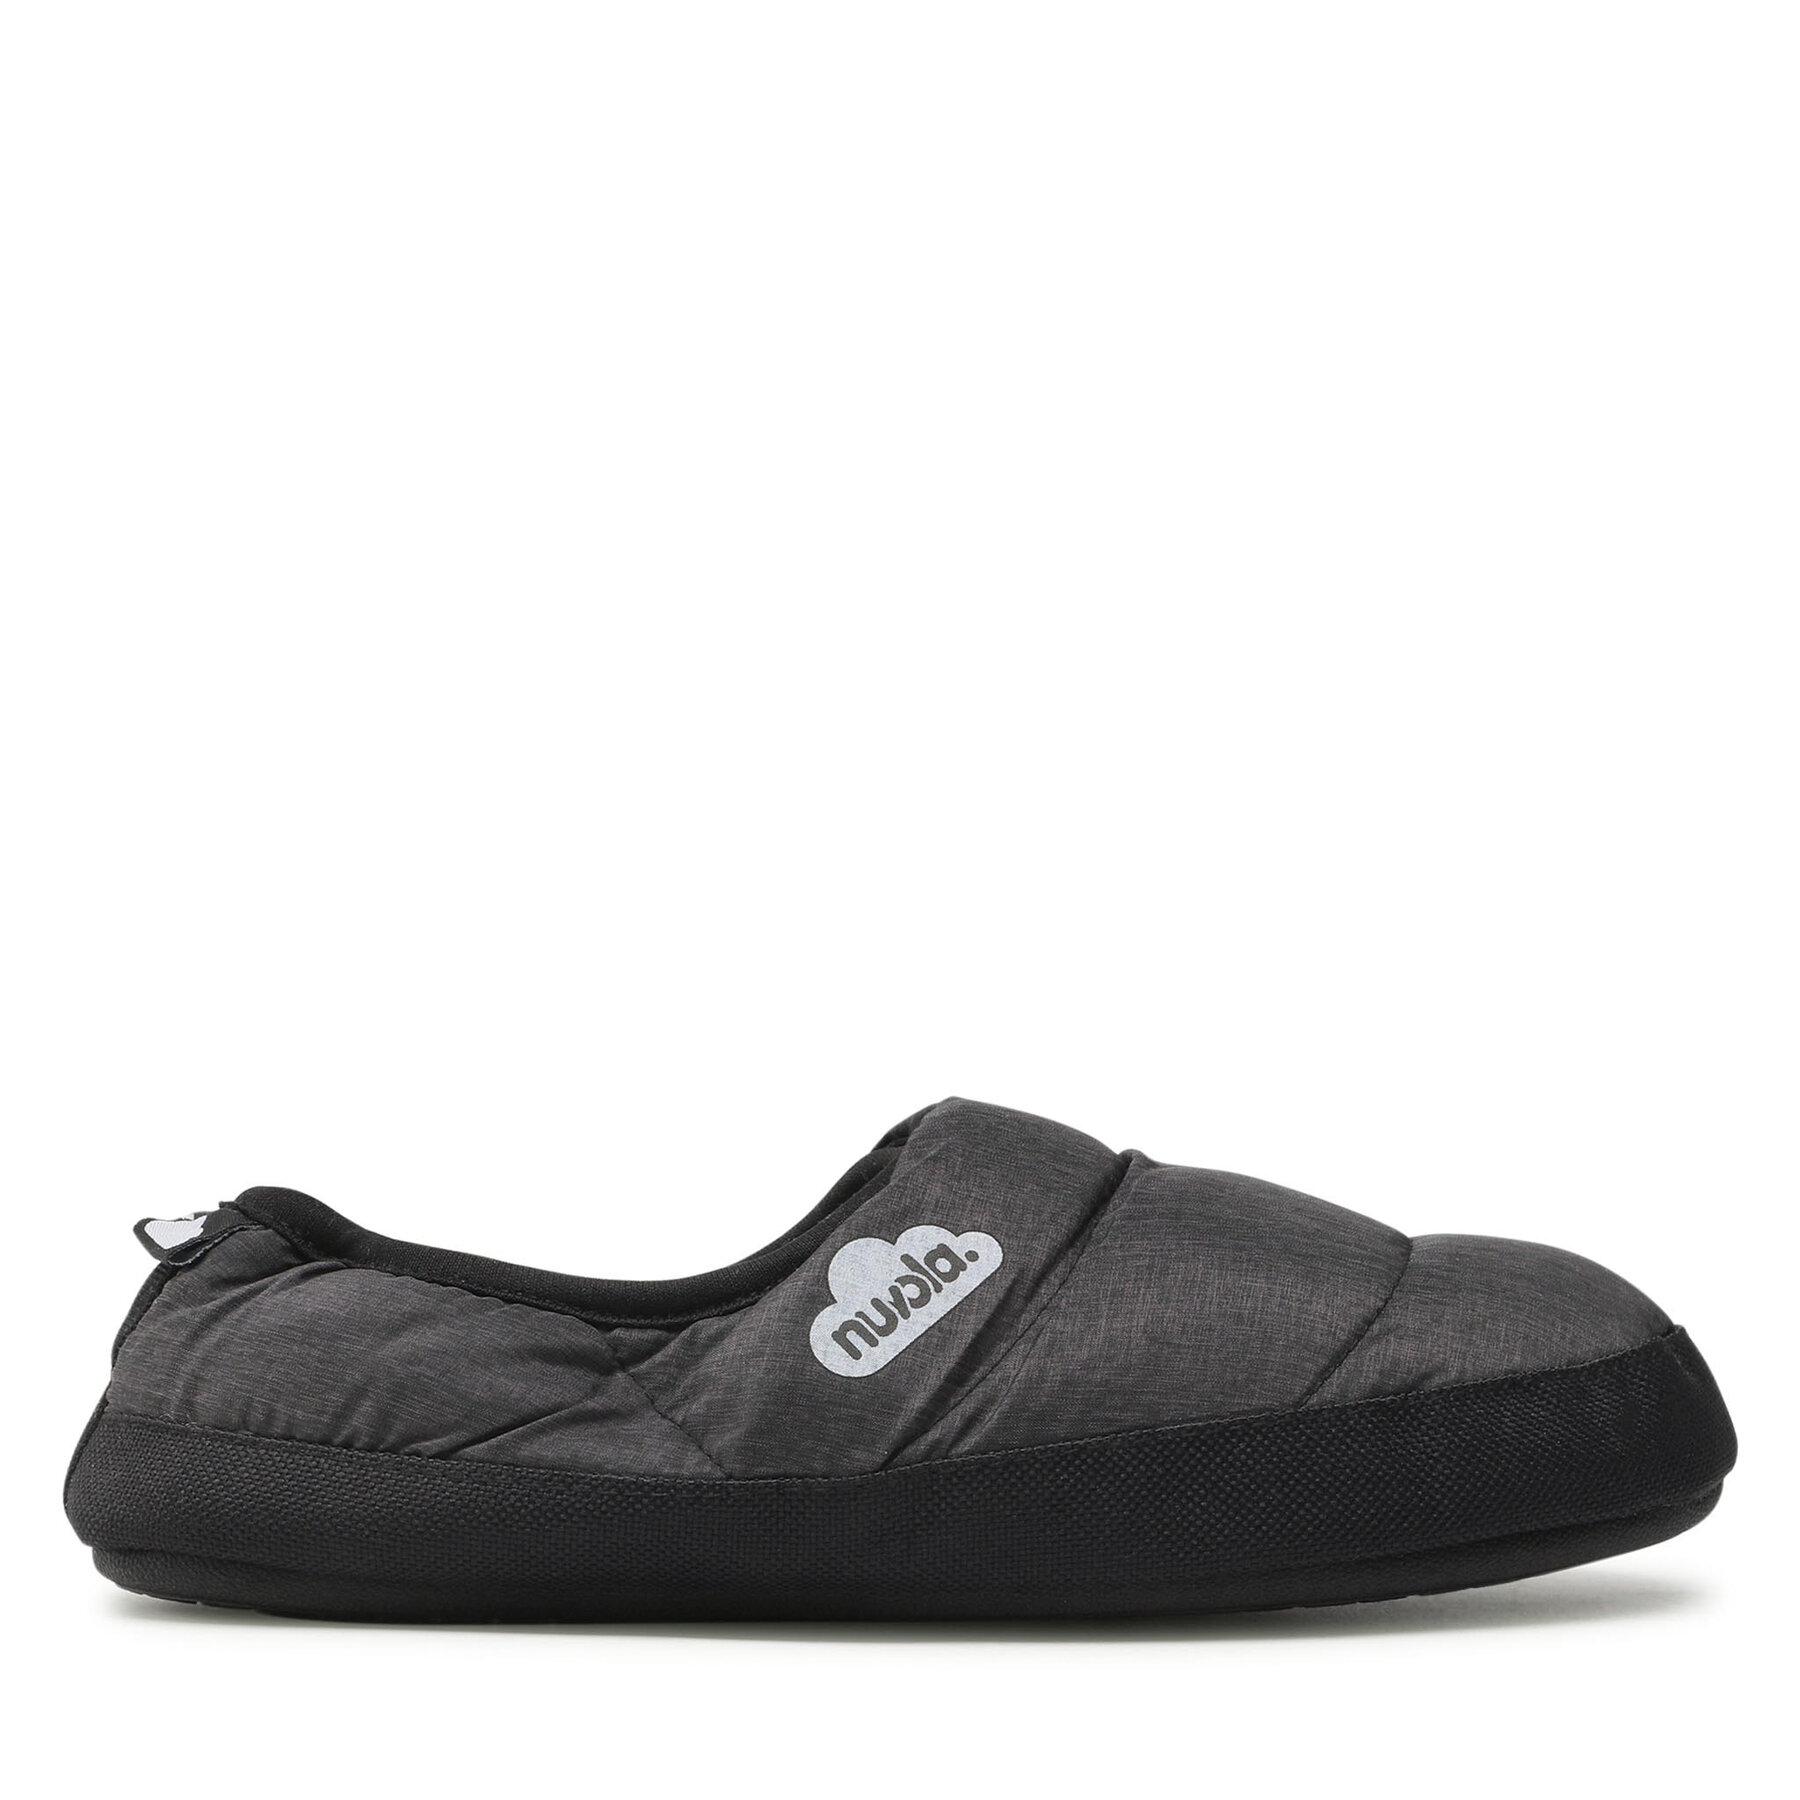 nuvola Classic Marbled Chill slippers grey 34-35 - Zapatillas de casa